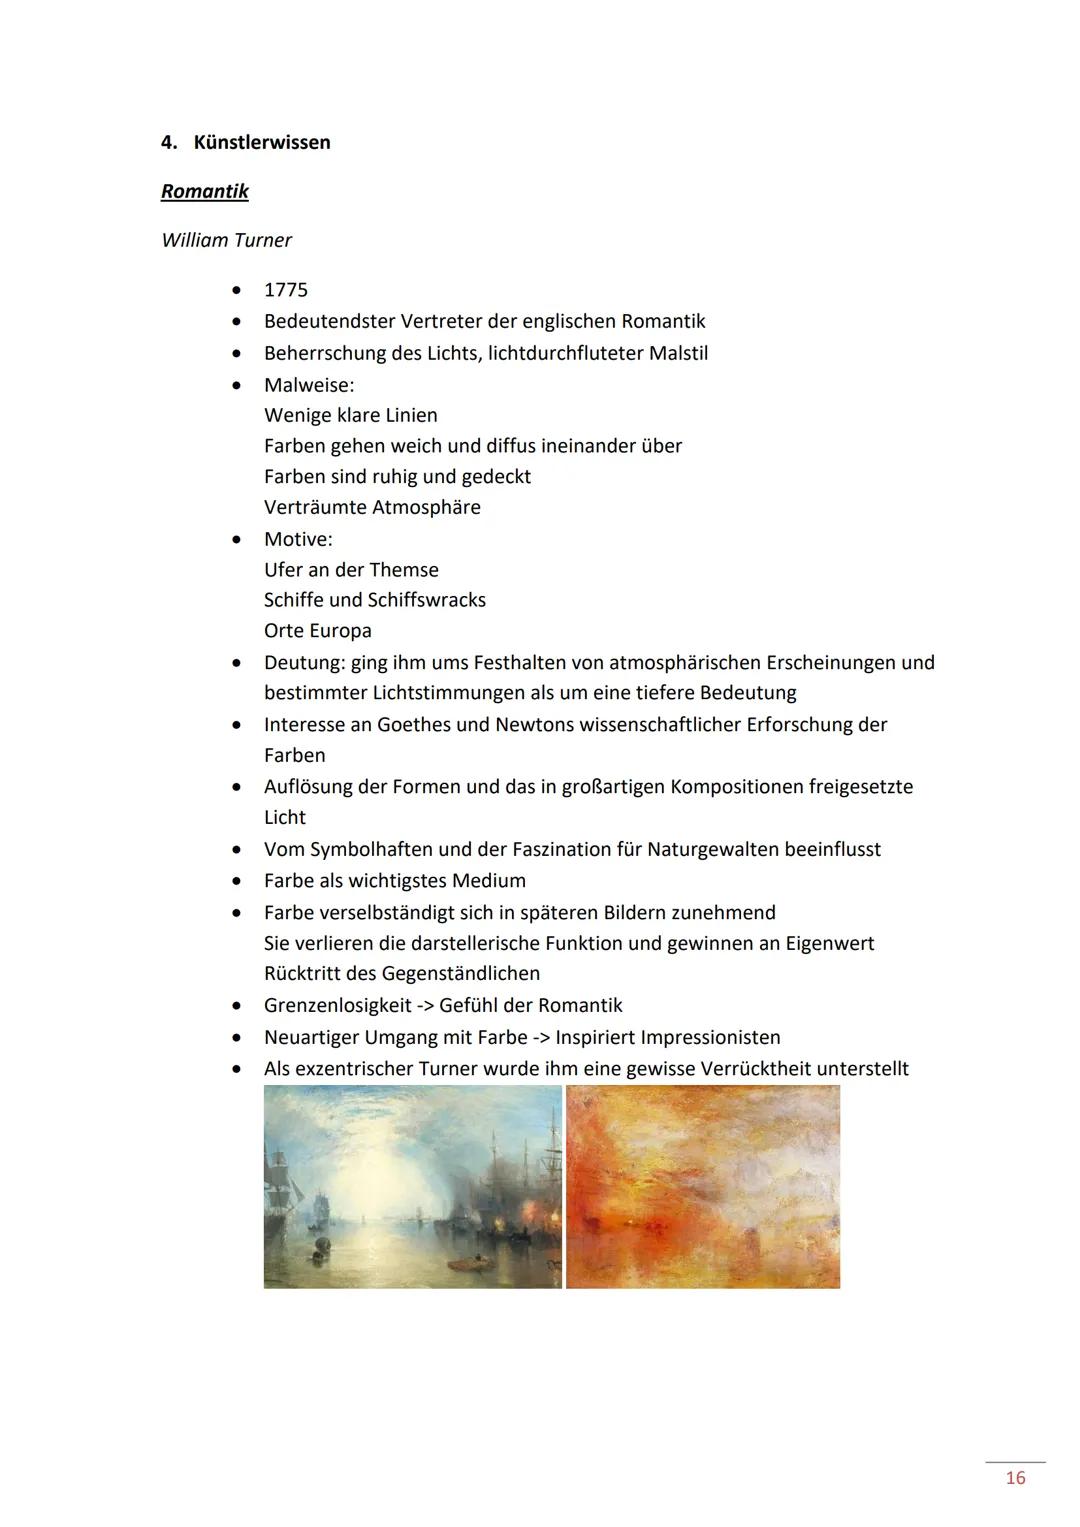 Inhaltsverzeichnis
Schwerpunktthemen
Q1 Entwicklung der Malerei
1. Leitfaden Bildanalyse
2. Leitfaden Grafik
3. Überblick über die Kunstgesc